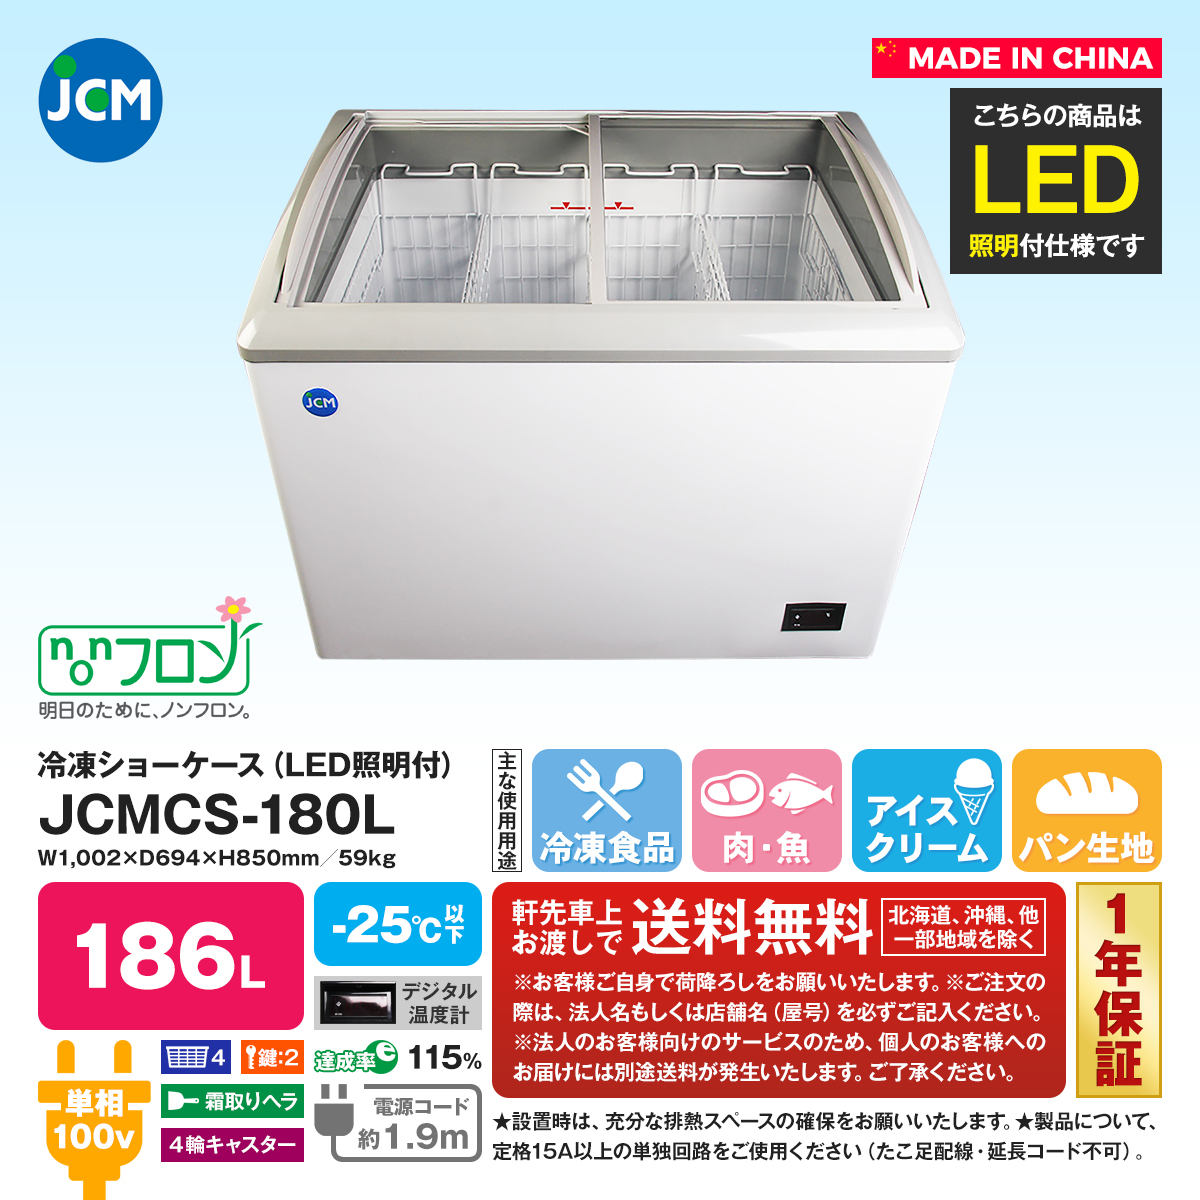 有限会社ユウキ / 【LED照明付】冷凍ショーケース『JCMCS-180L』